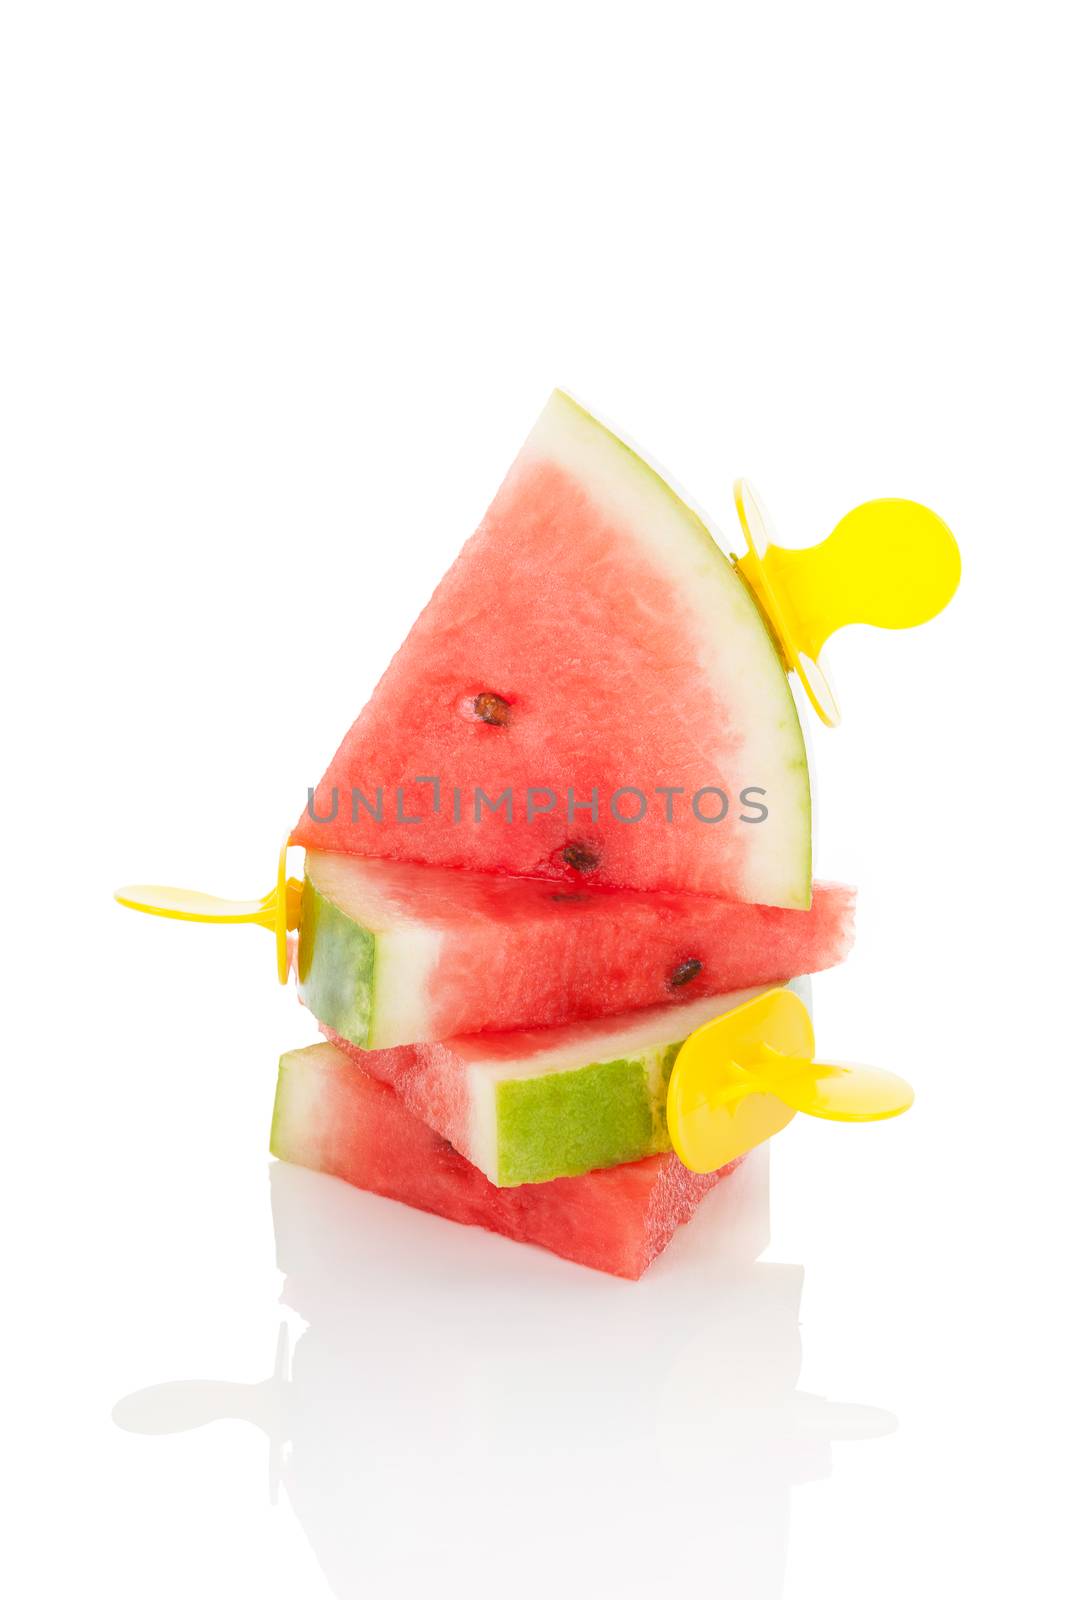 Watermelon ice pop. by eskymaks